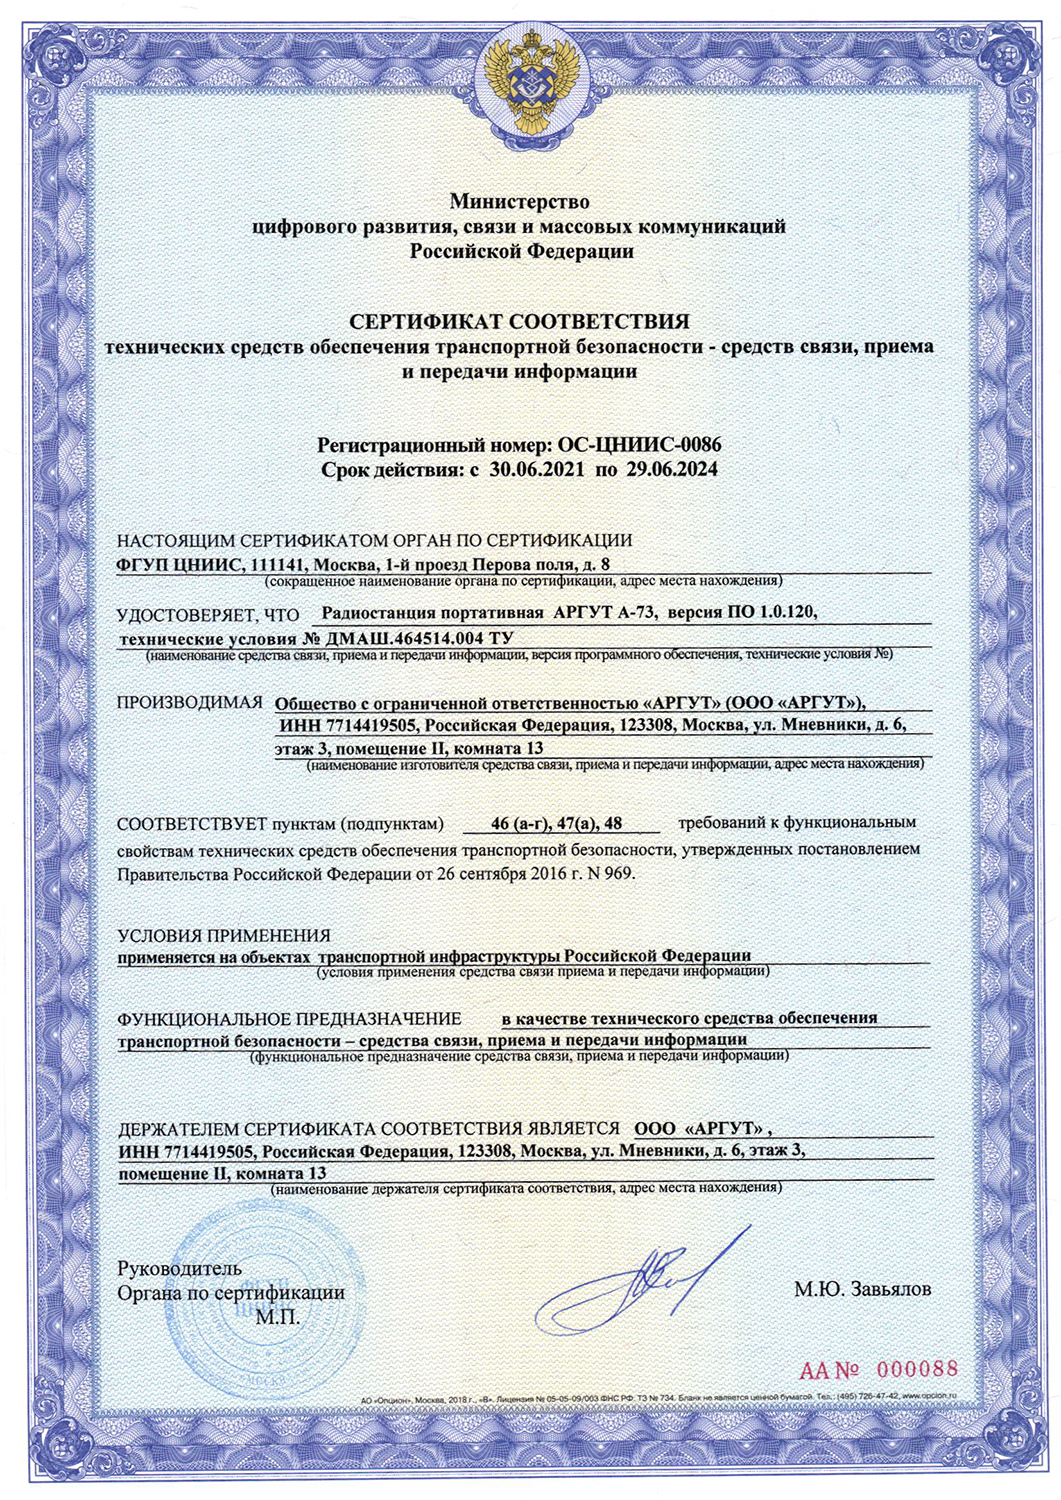 Сертификат соответствия технических средств обеспечения транспортной безопасности - средств связи приема и передачи информации